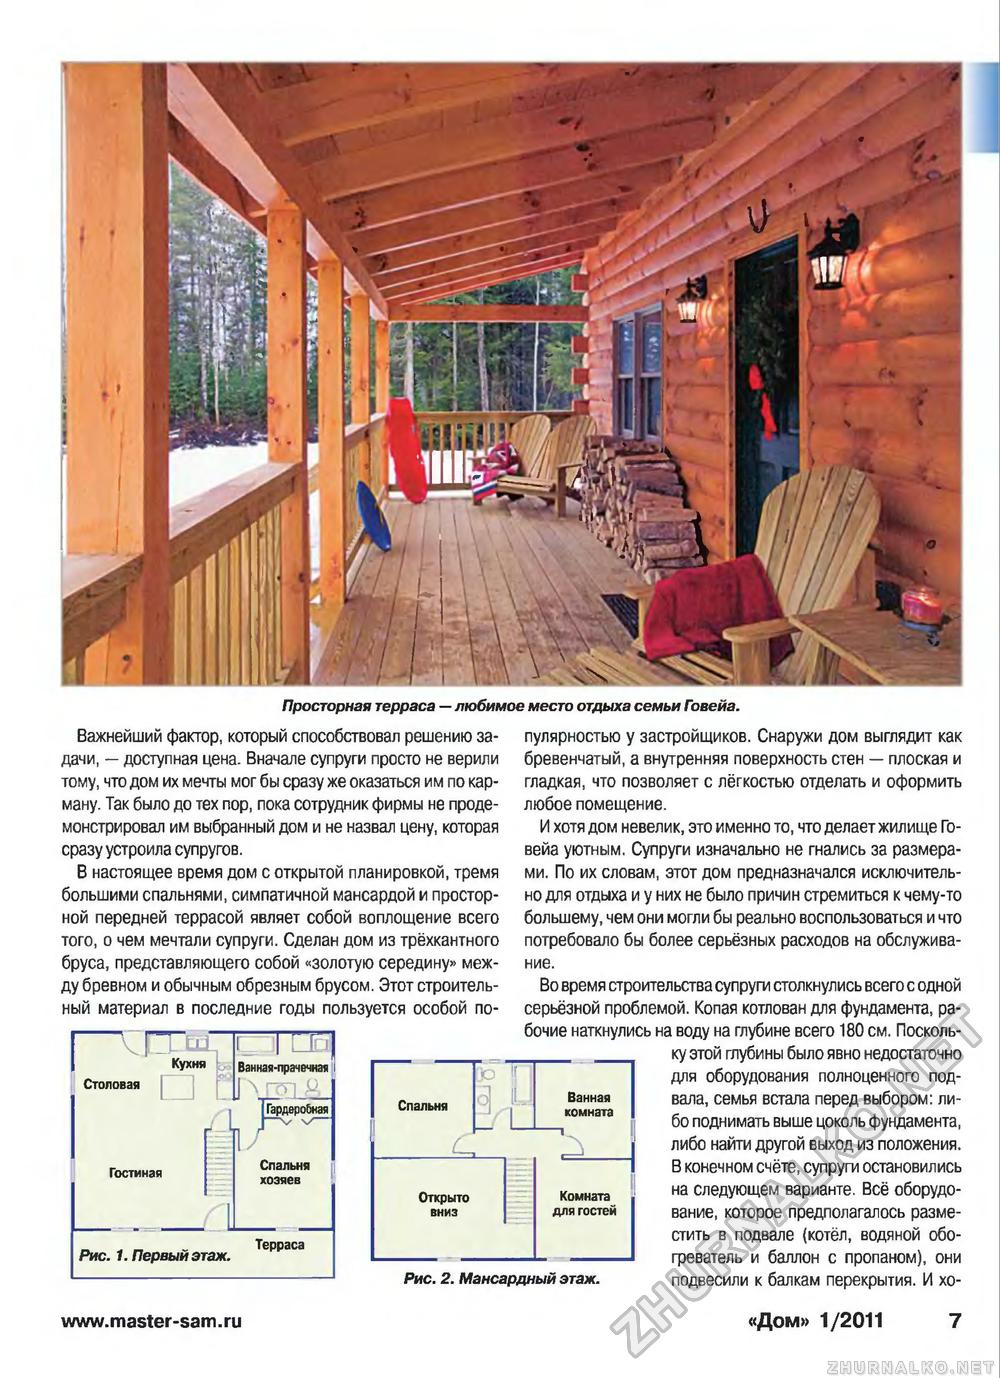 Дом 2011-01, страница 7